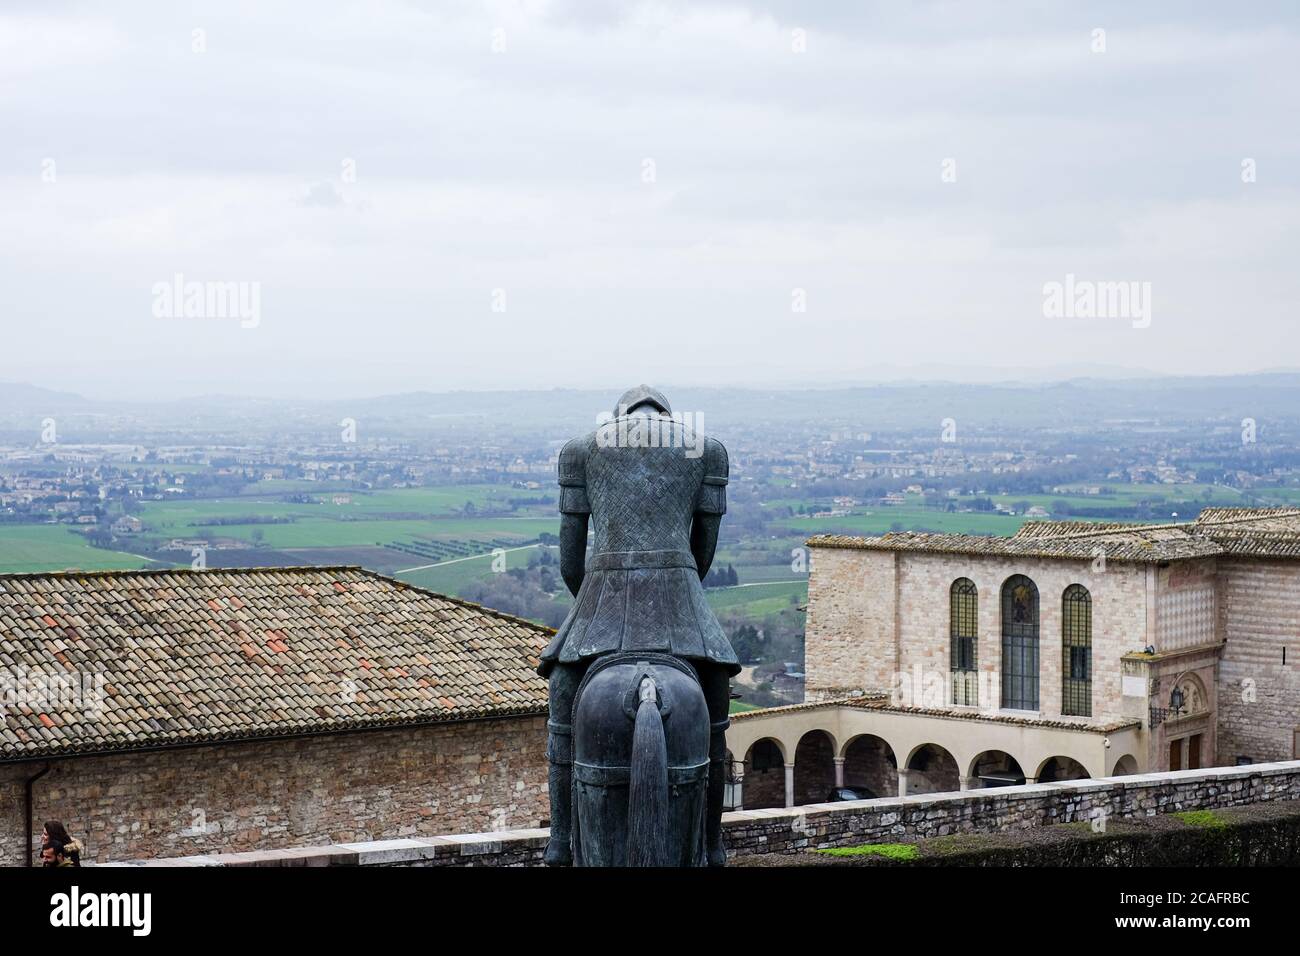 Assisi, italien - juni 30 2020: Berühmte Bronzeskulptur vor der kirche des heiligen franz von Assisi über der alten Stadtlandschaft, italien Stockfoto